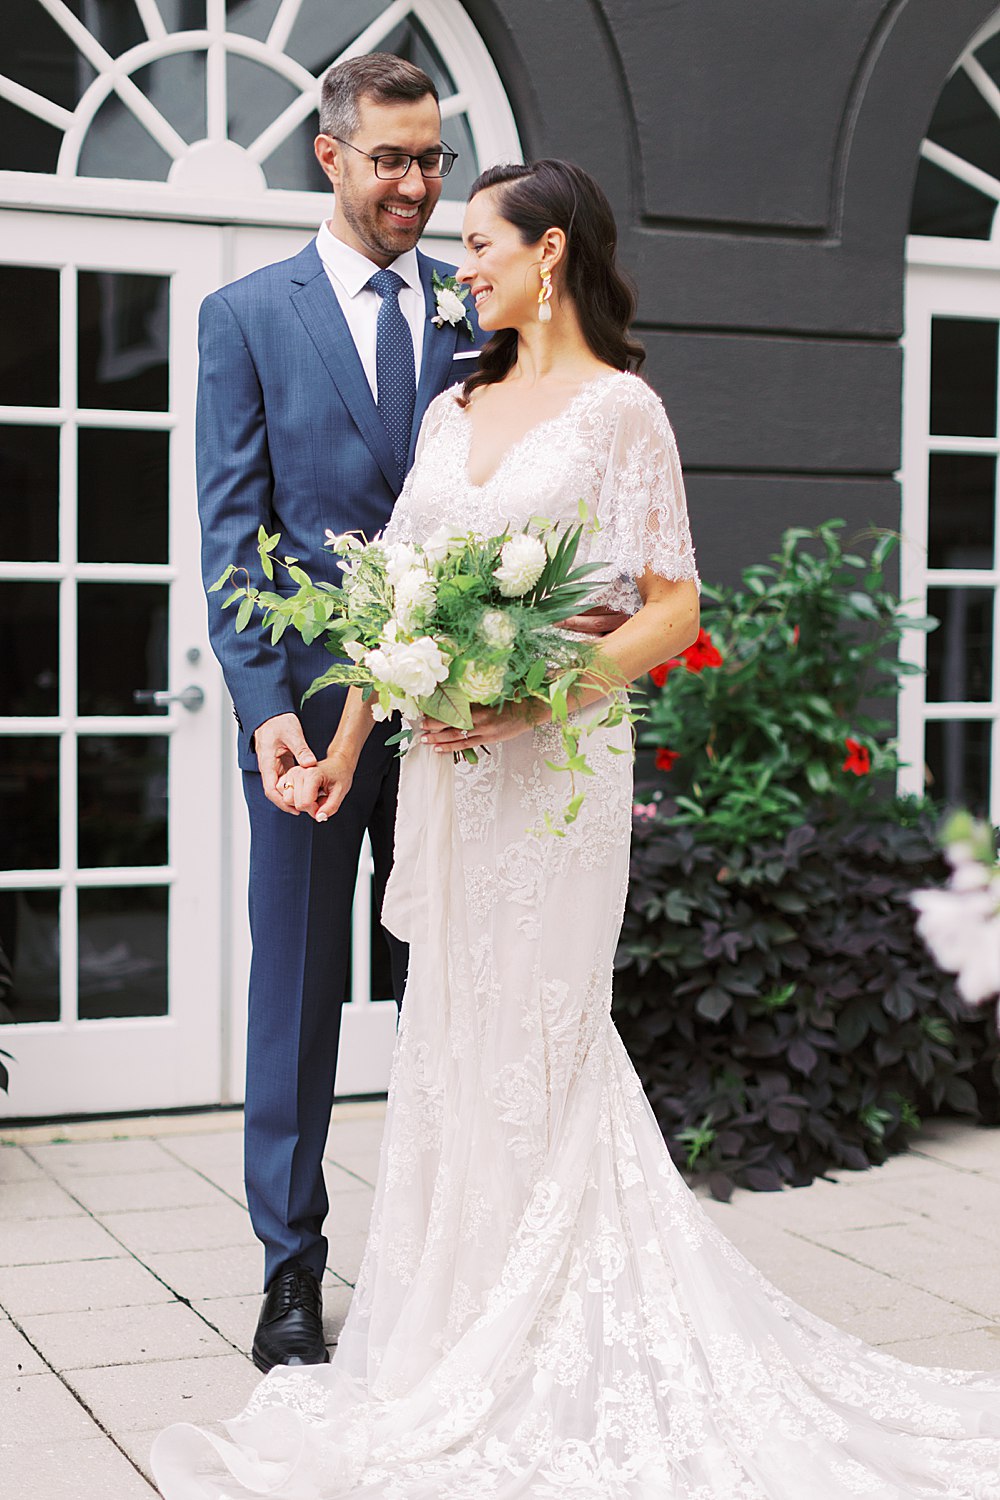 Marchesa bridal gown at Washington DC wedding